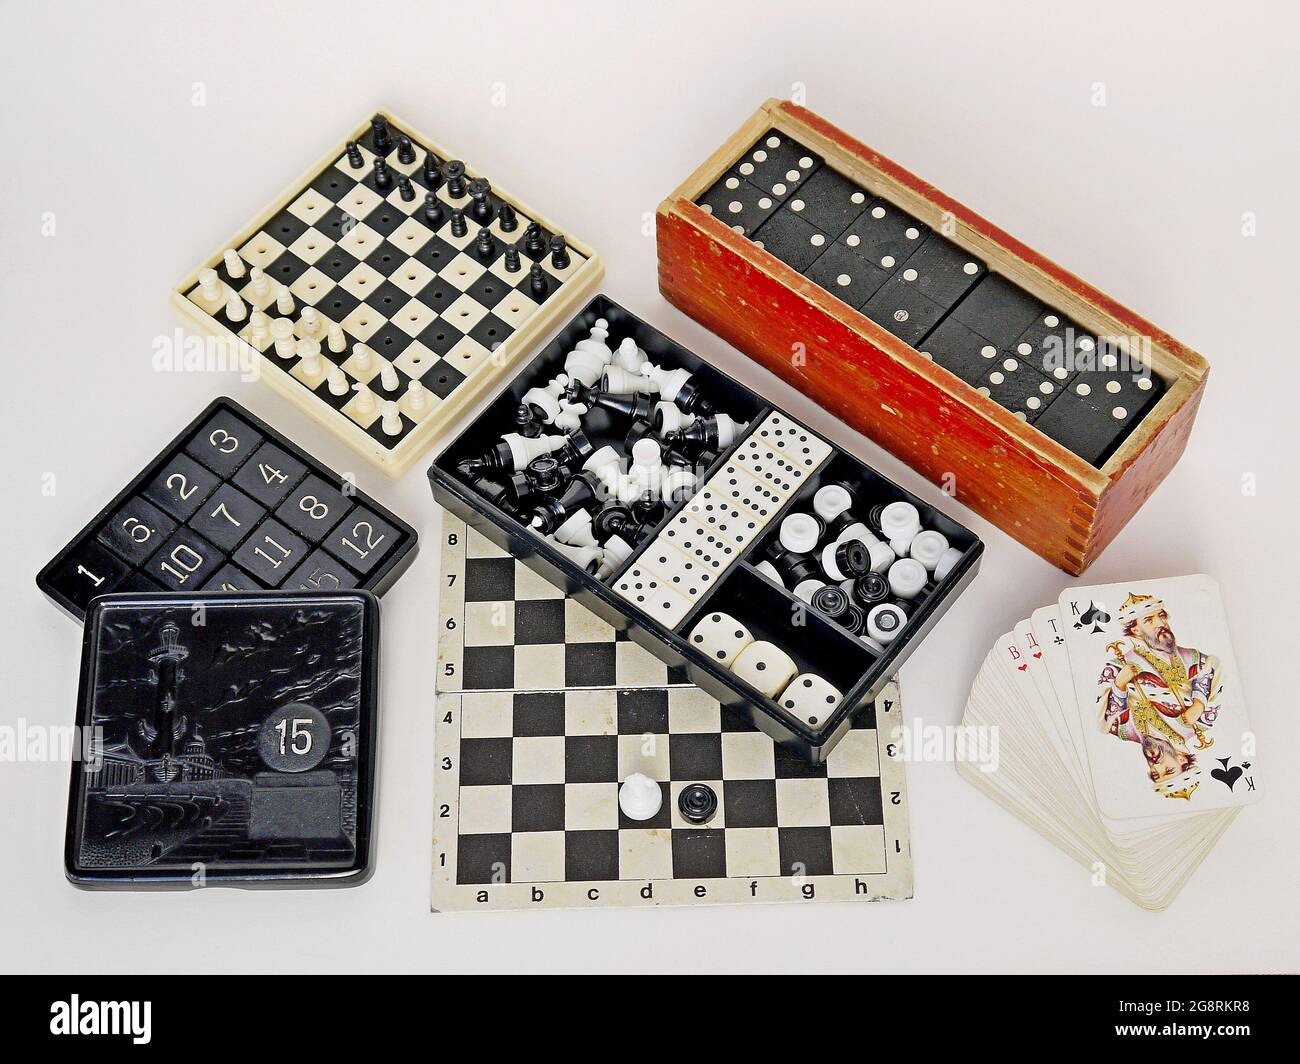  Juego de mesa – Colección de juegos de mesa 10 en 1 – ajedrez,  damas, damas chinas, backgammon, serpiente y escalera, Ludo y más juegos de  mesa clásicos para niños : Juguetes y Juegos